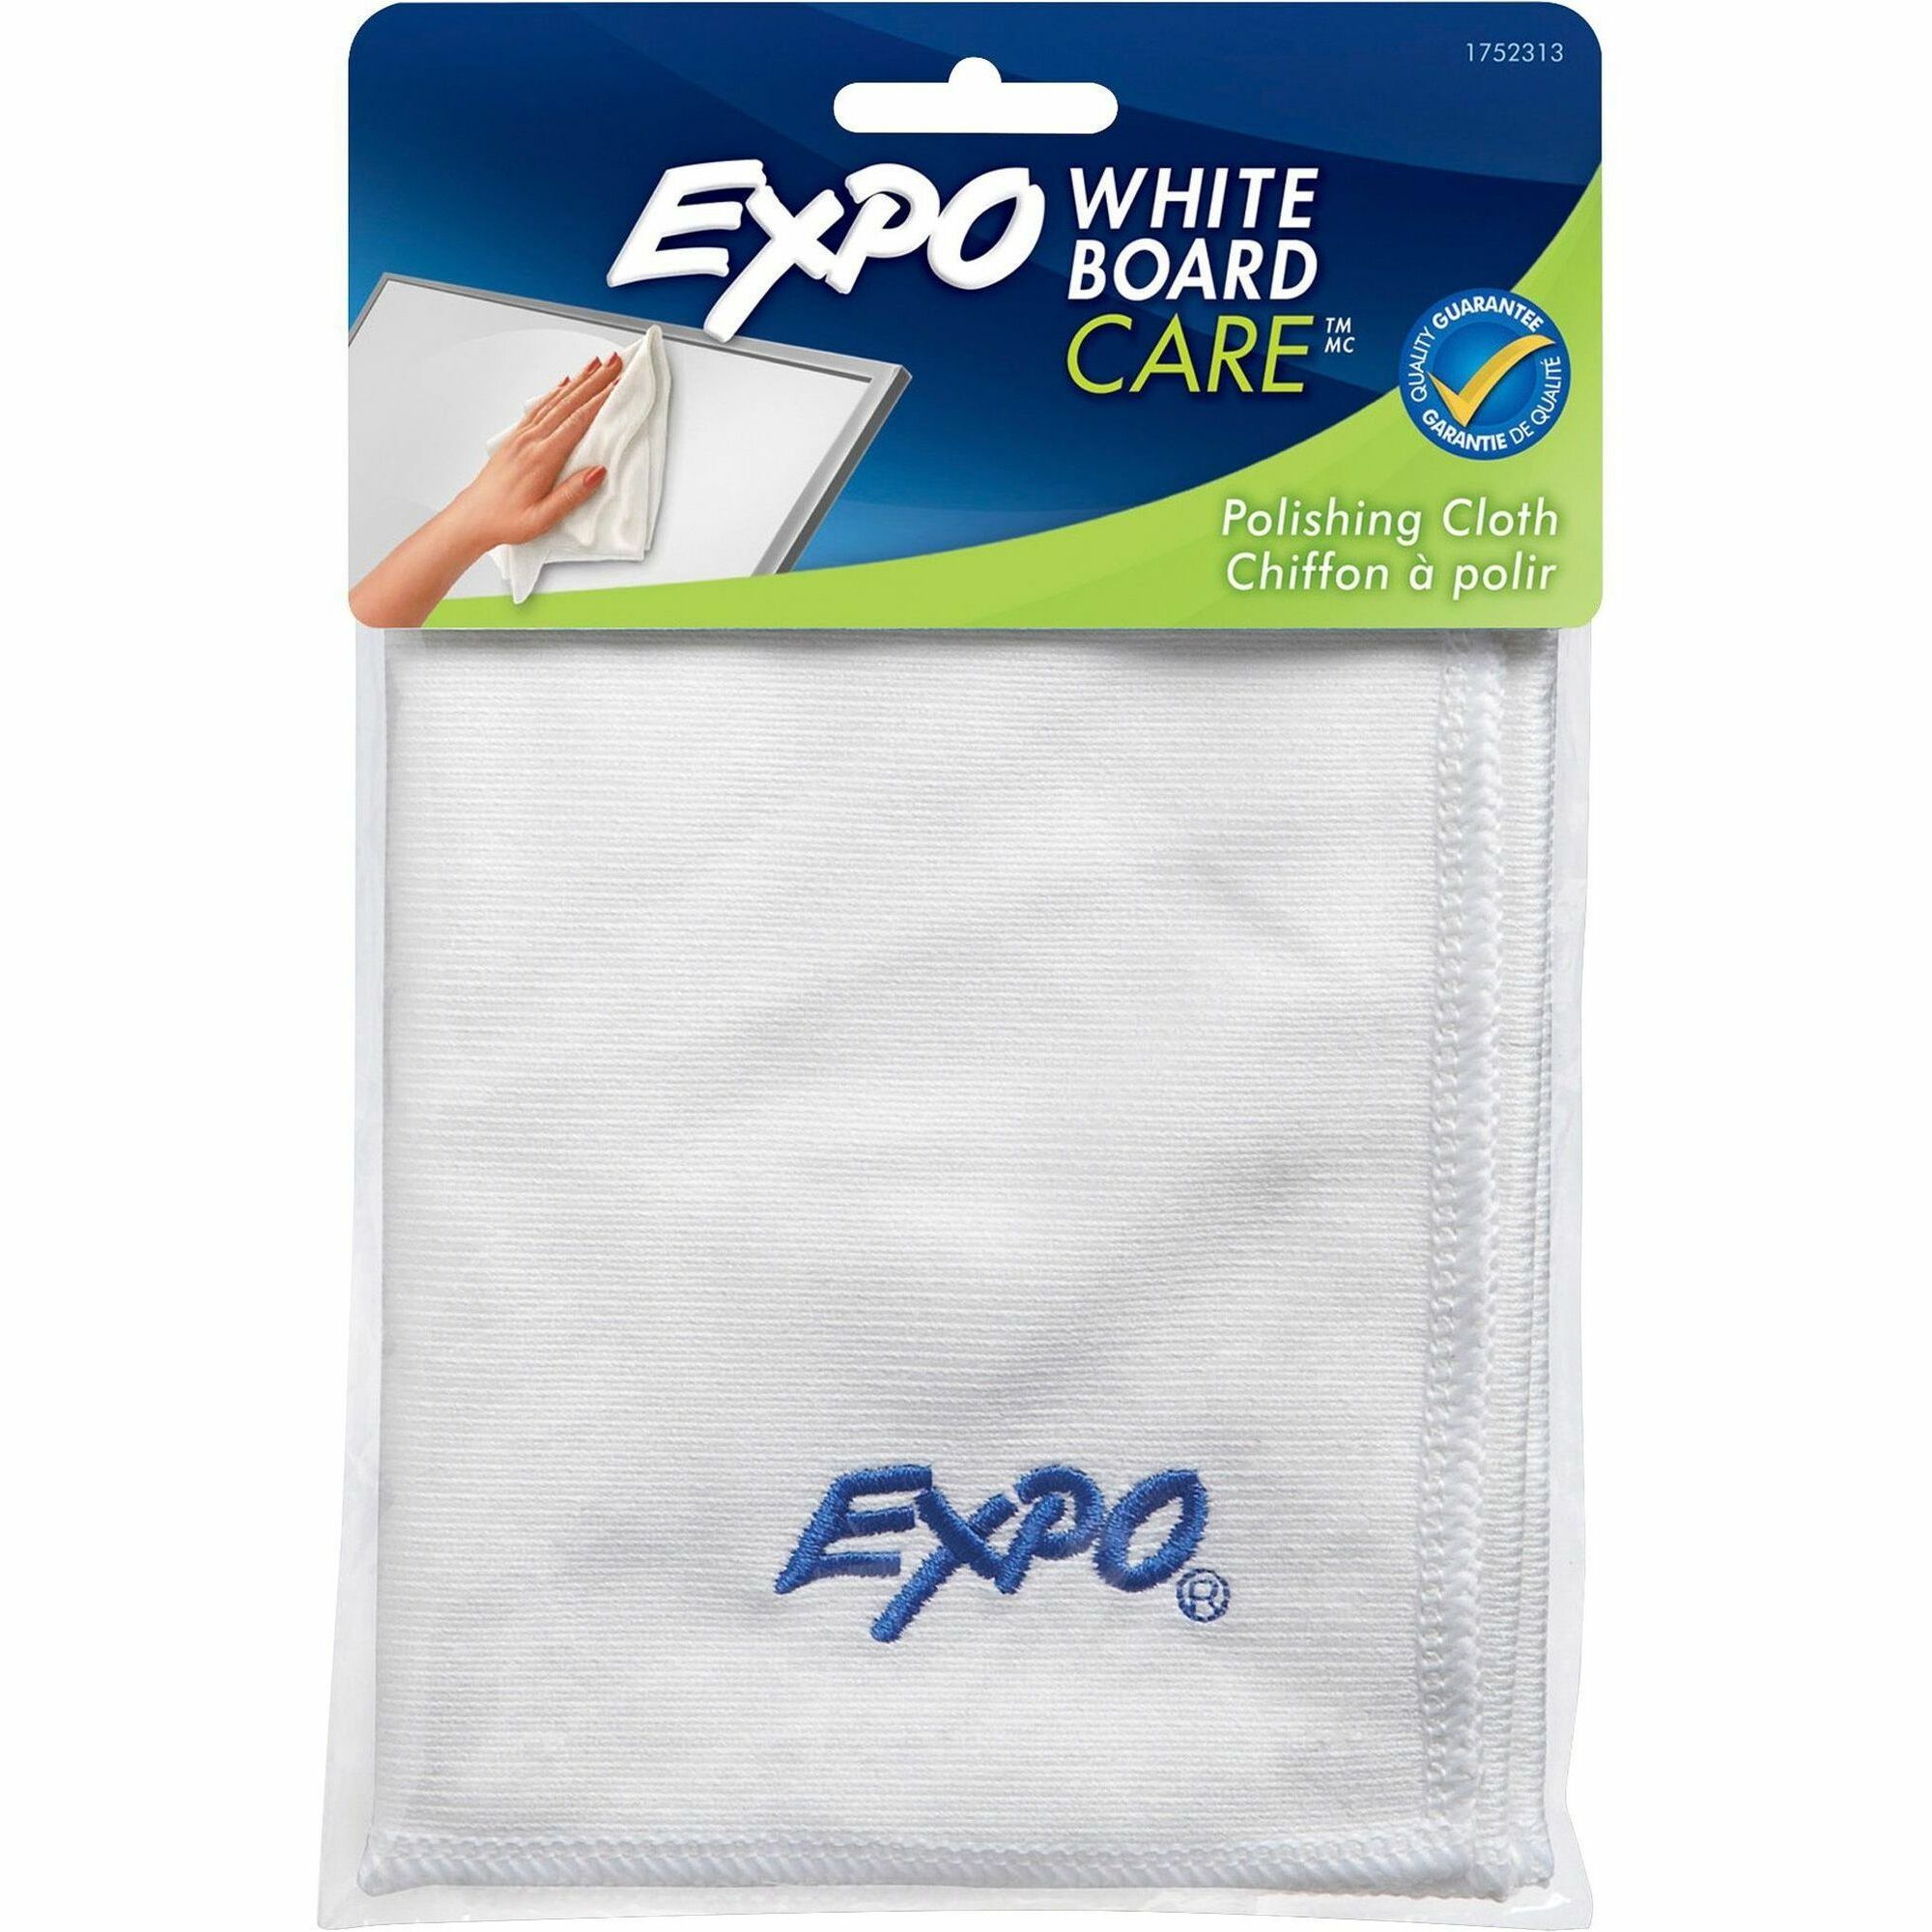 EXPO WHITE BOARD CARE –